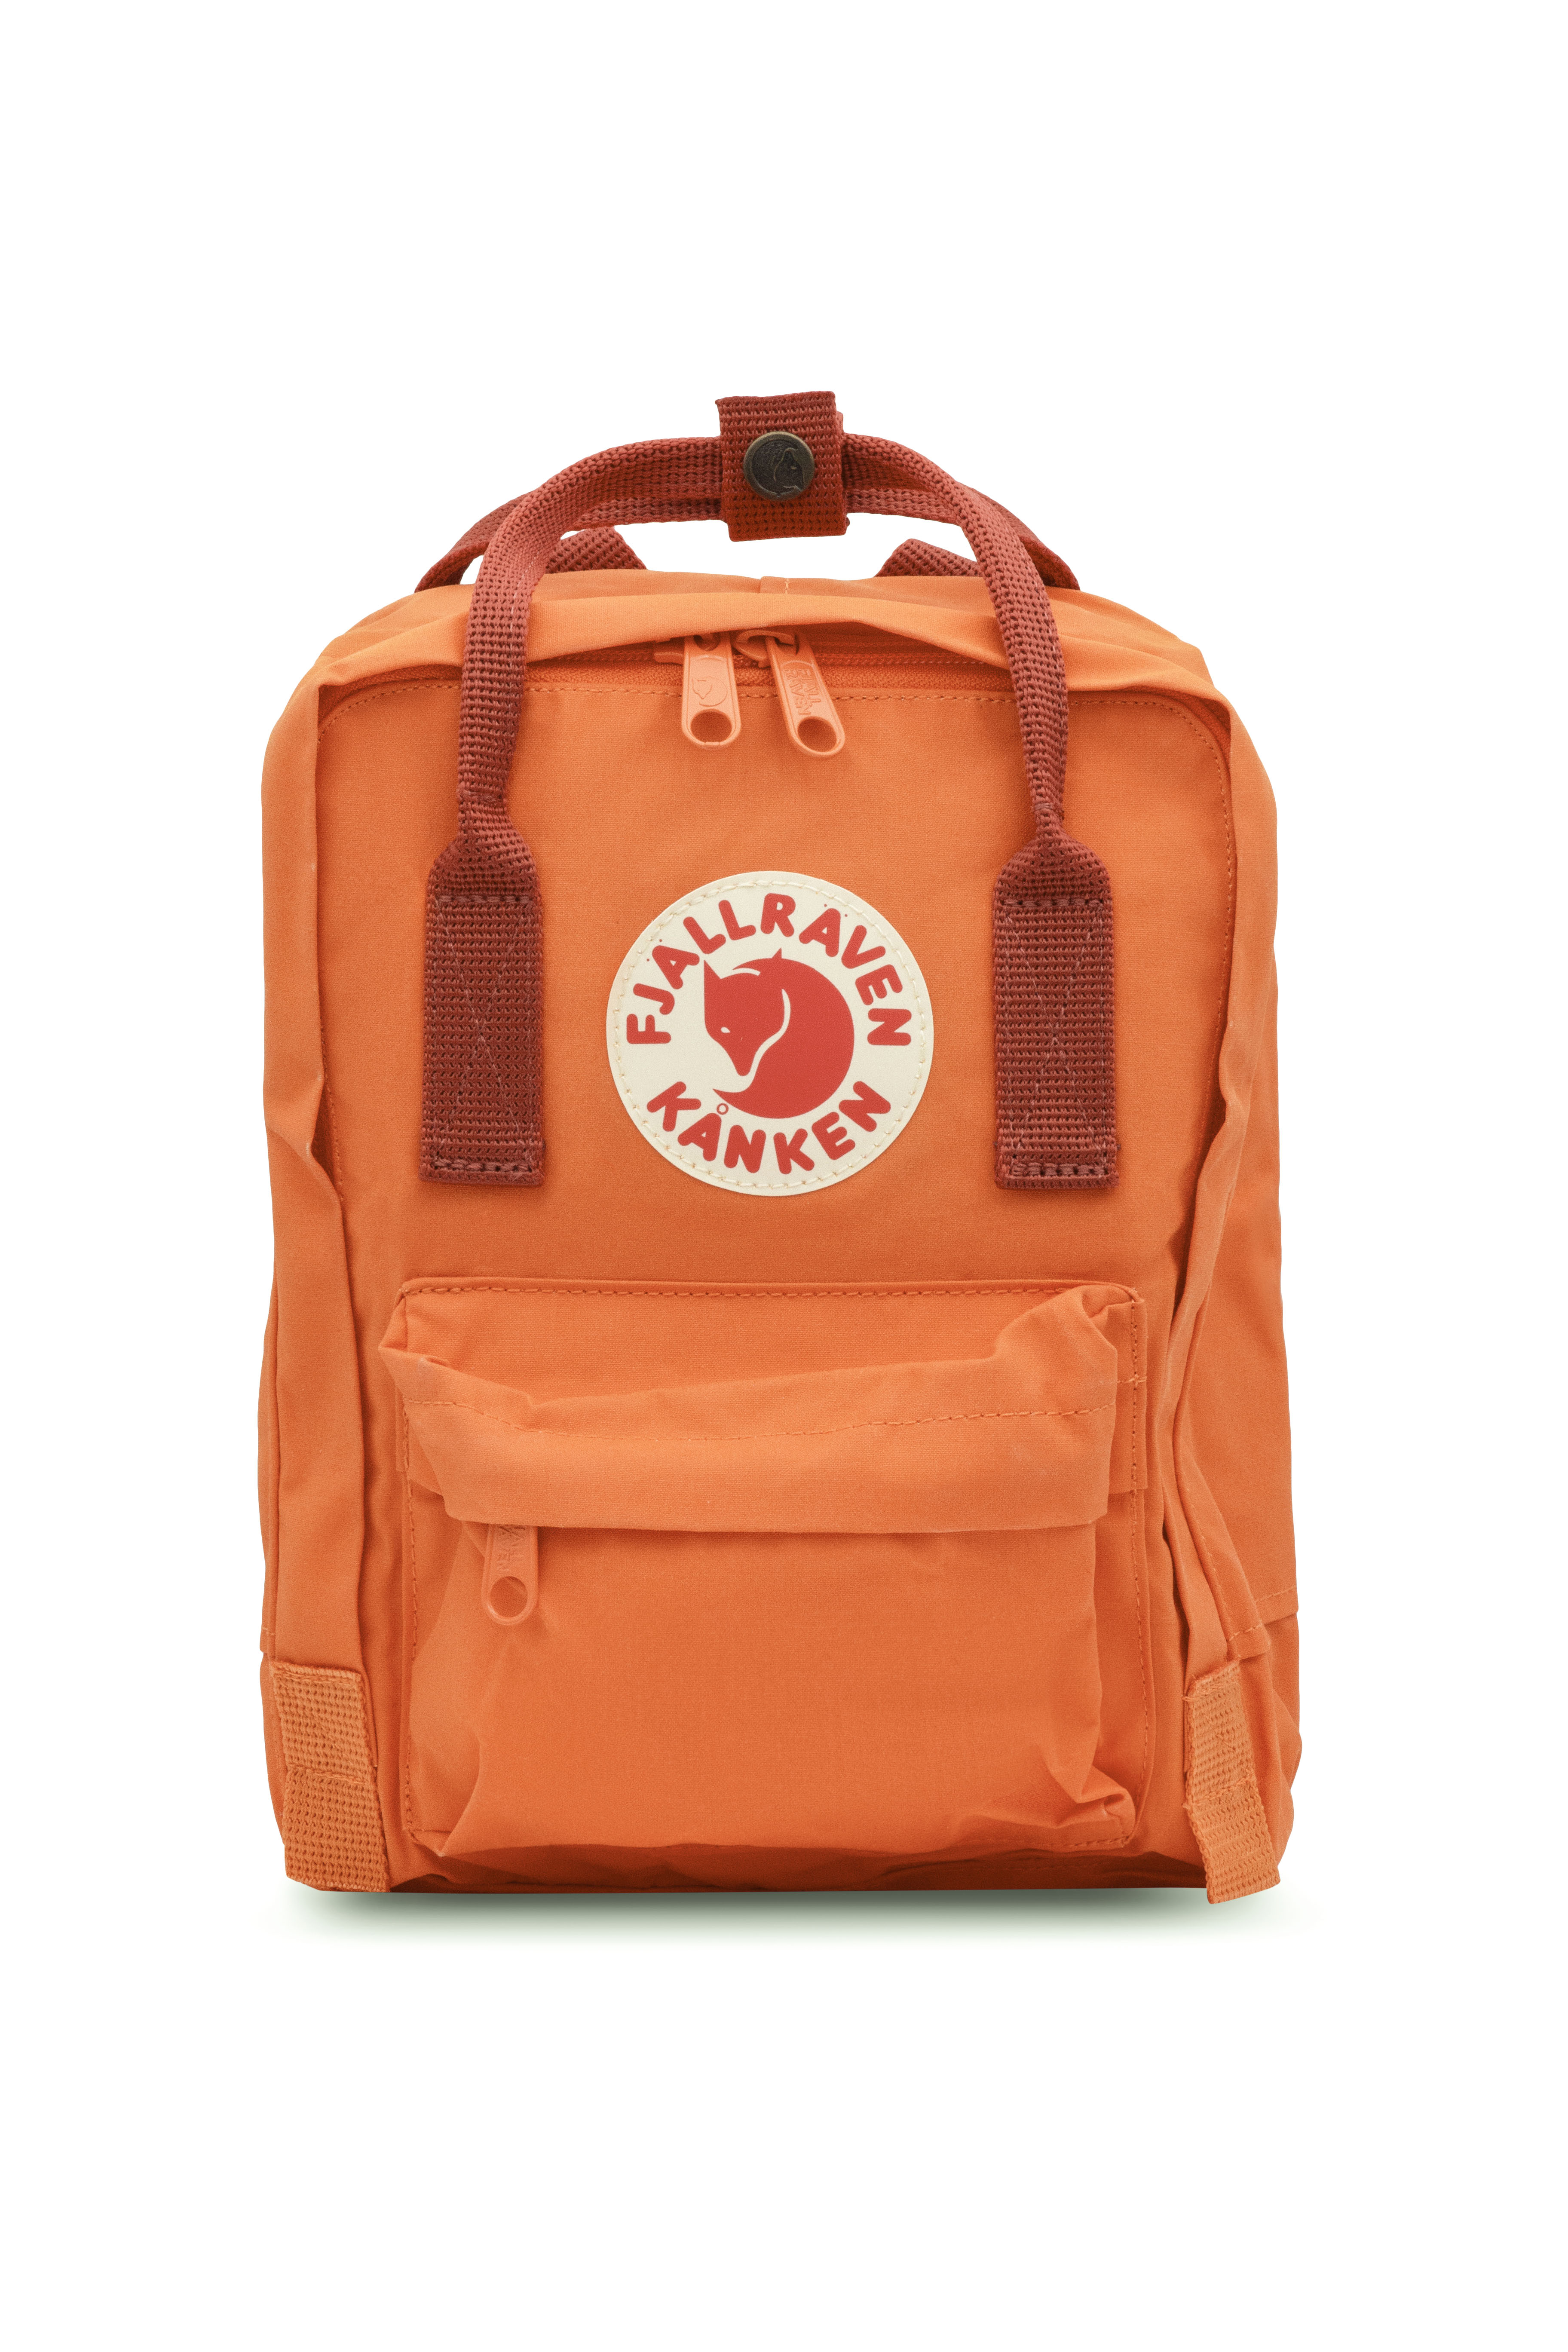 Fjallraven - Kanken Mini Classic Backpack for Everyday - Burnt Orange-Deep Red